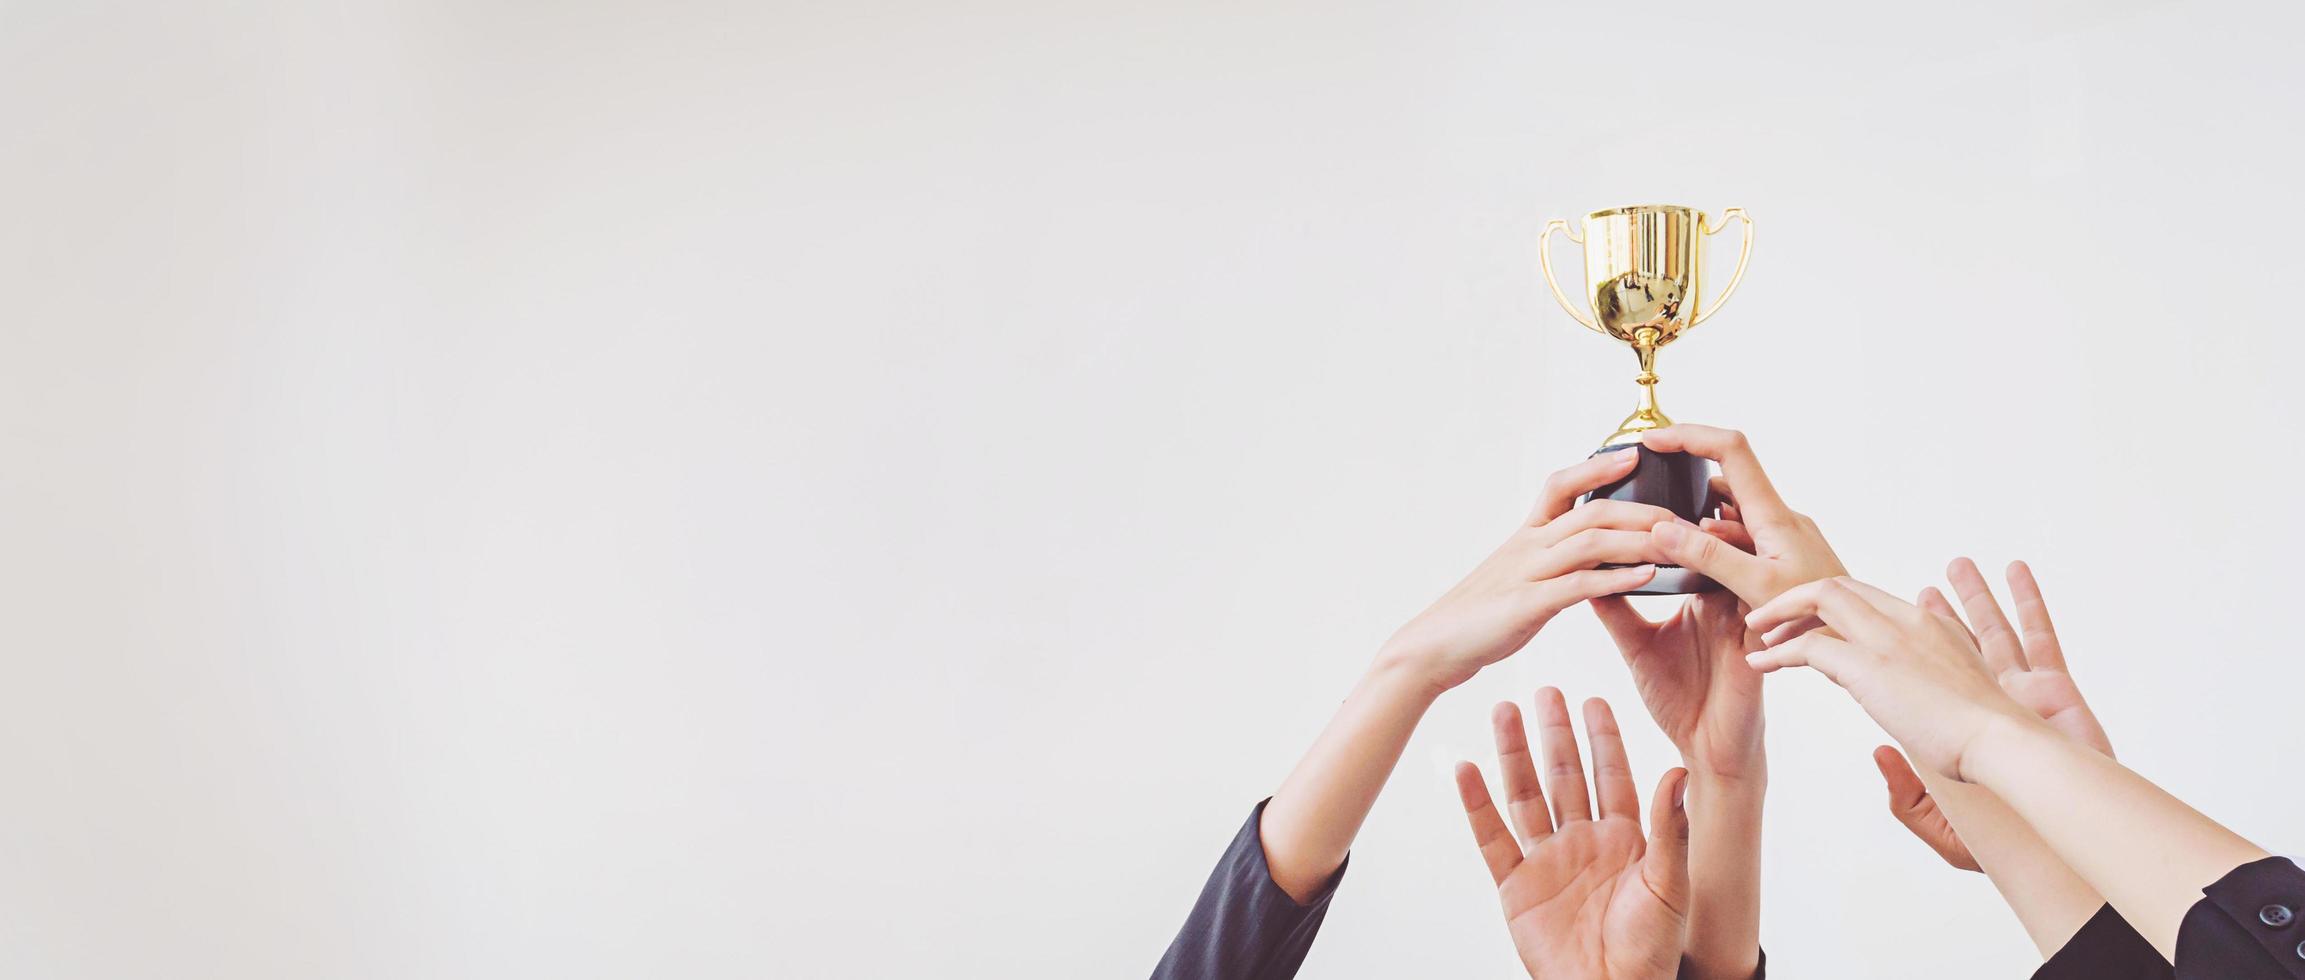 le mani si arrampicano per la coppa del trofeo d'oro, concetto di business foto